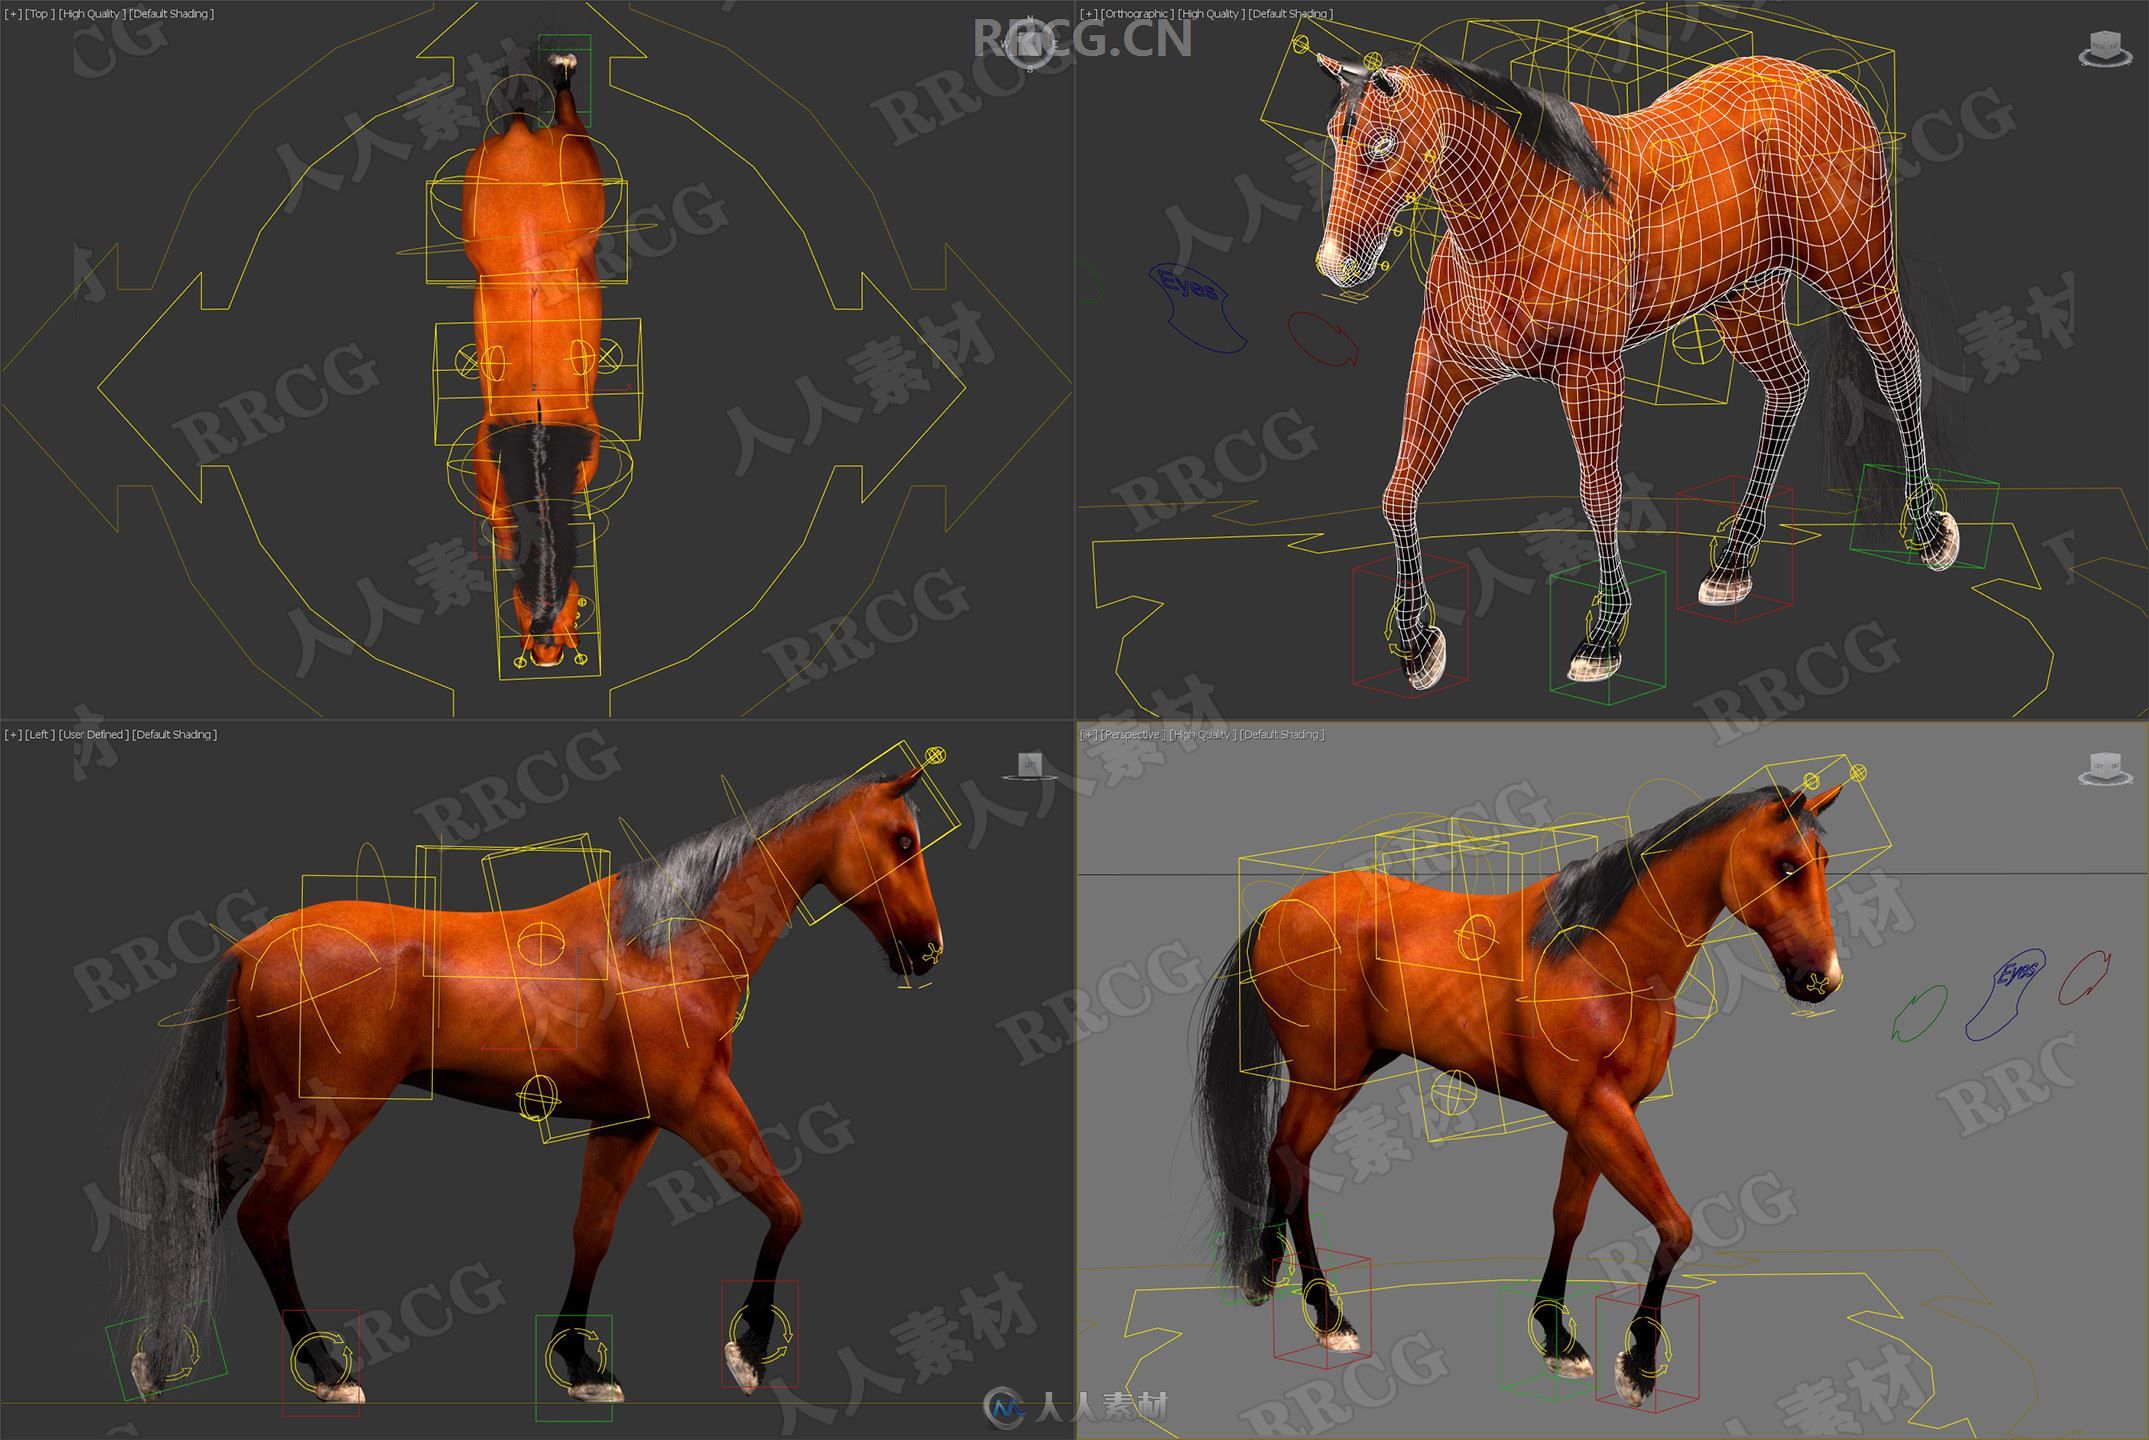 超逼真马匹骏马造型动画高精度3D模型